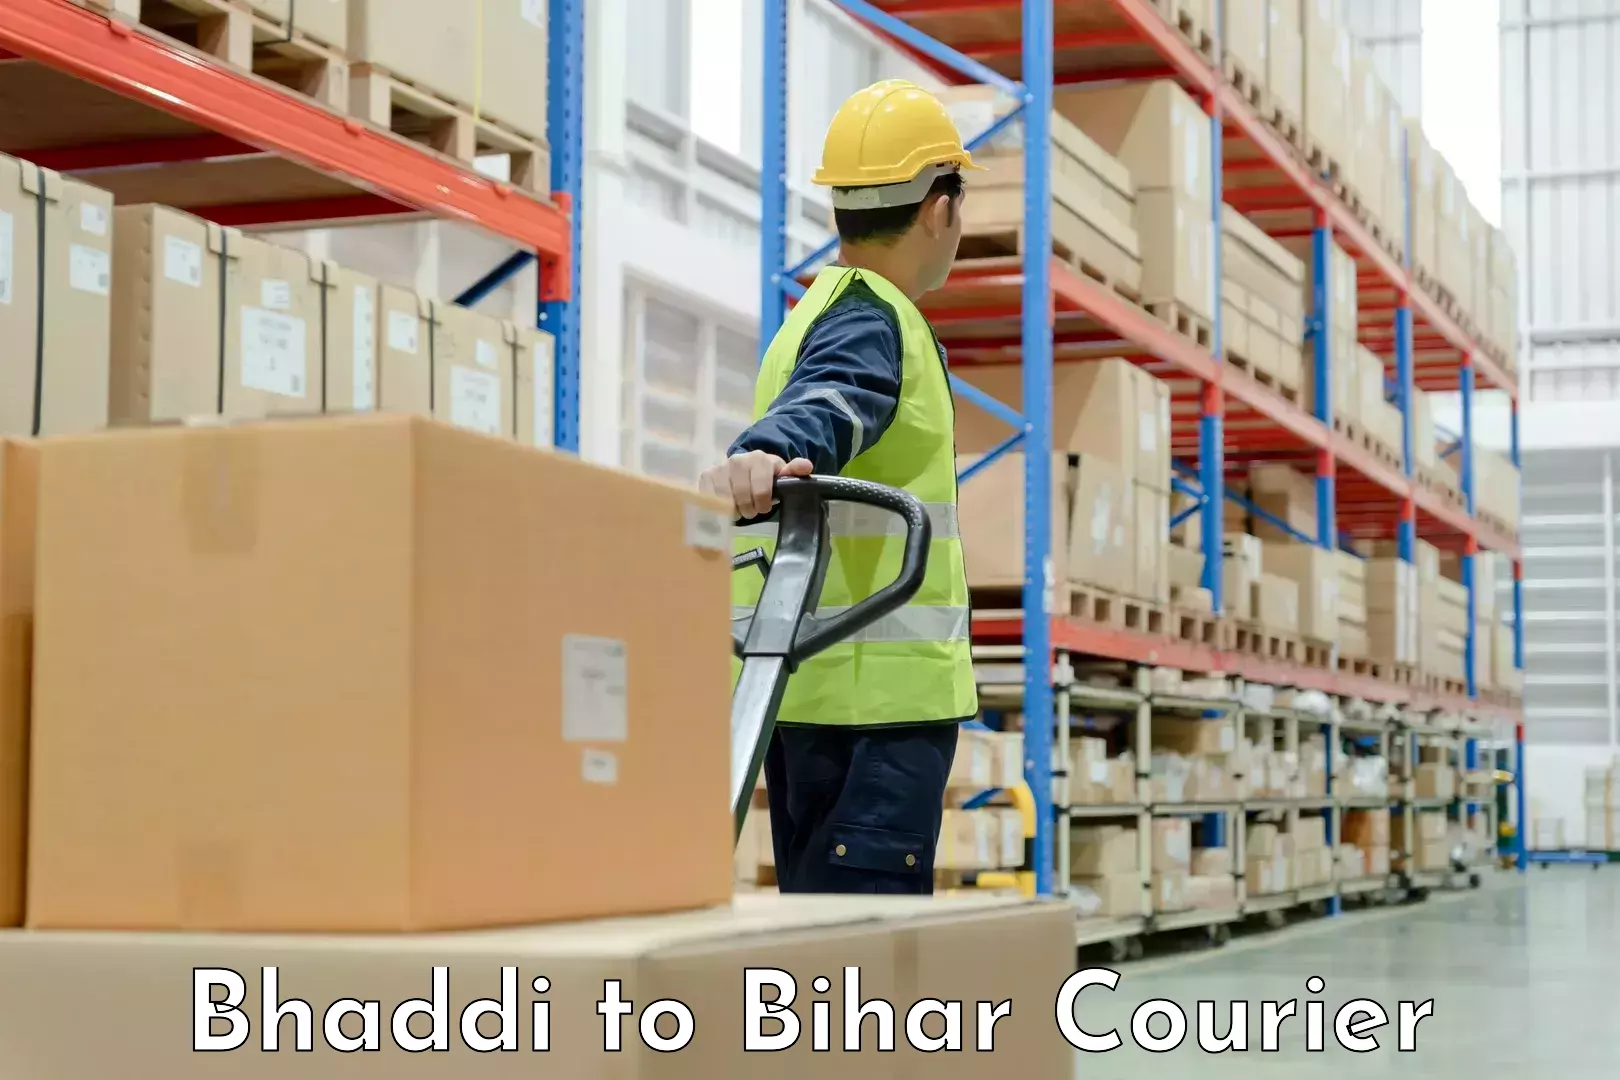 Customized moving solutions Bhaddi to Bahadurganj